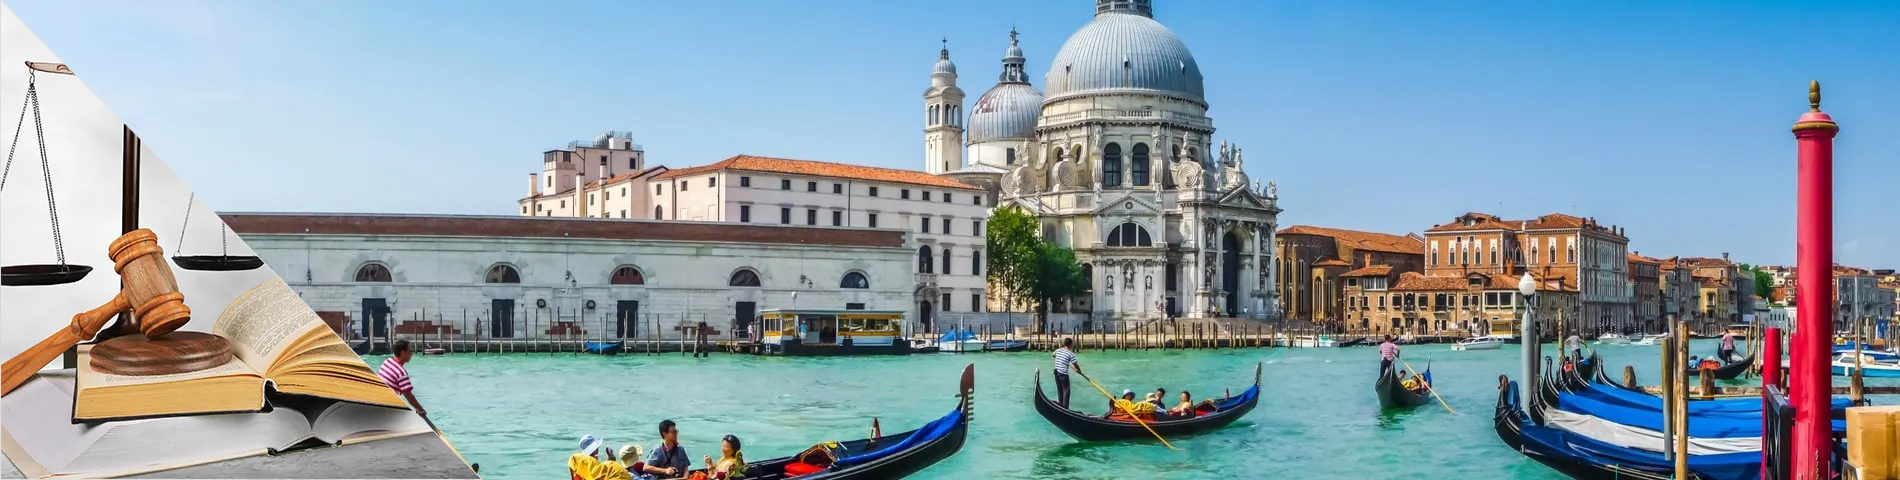 Венеция - Итальянский для Юристов